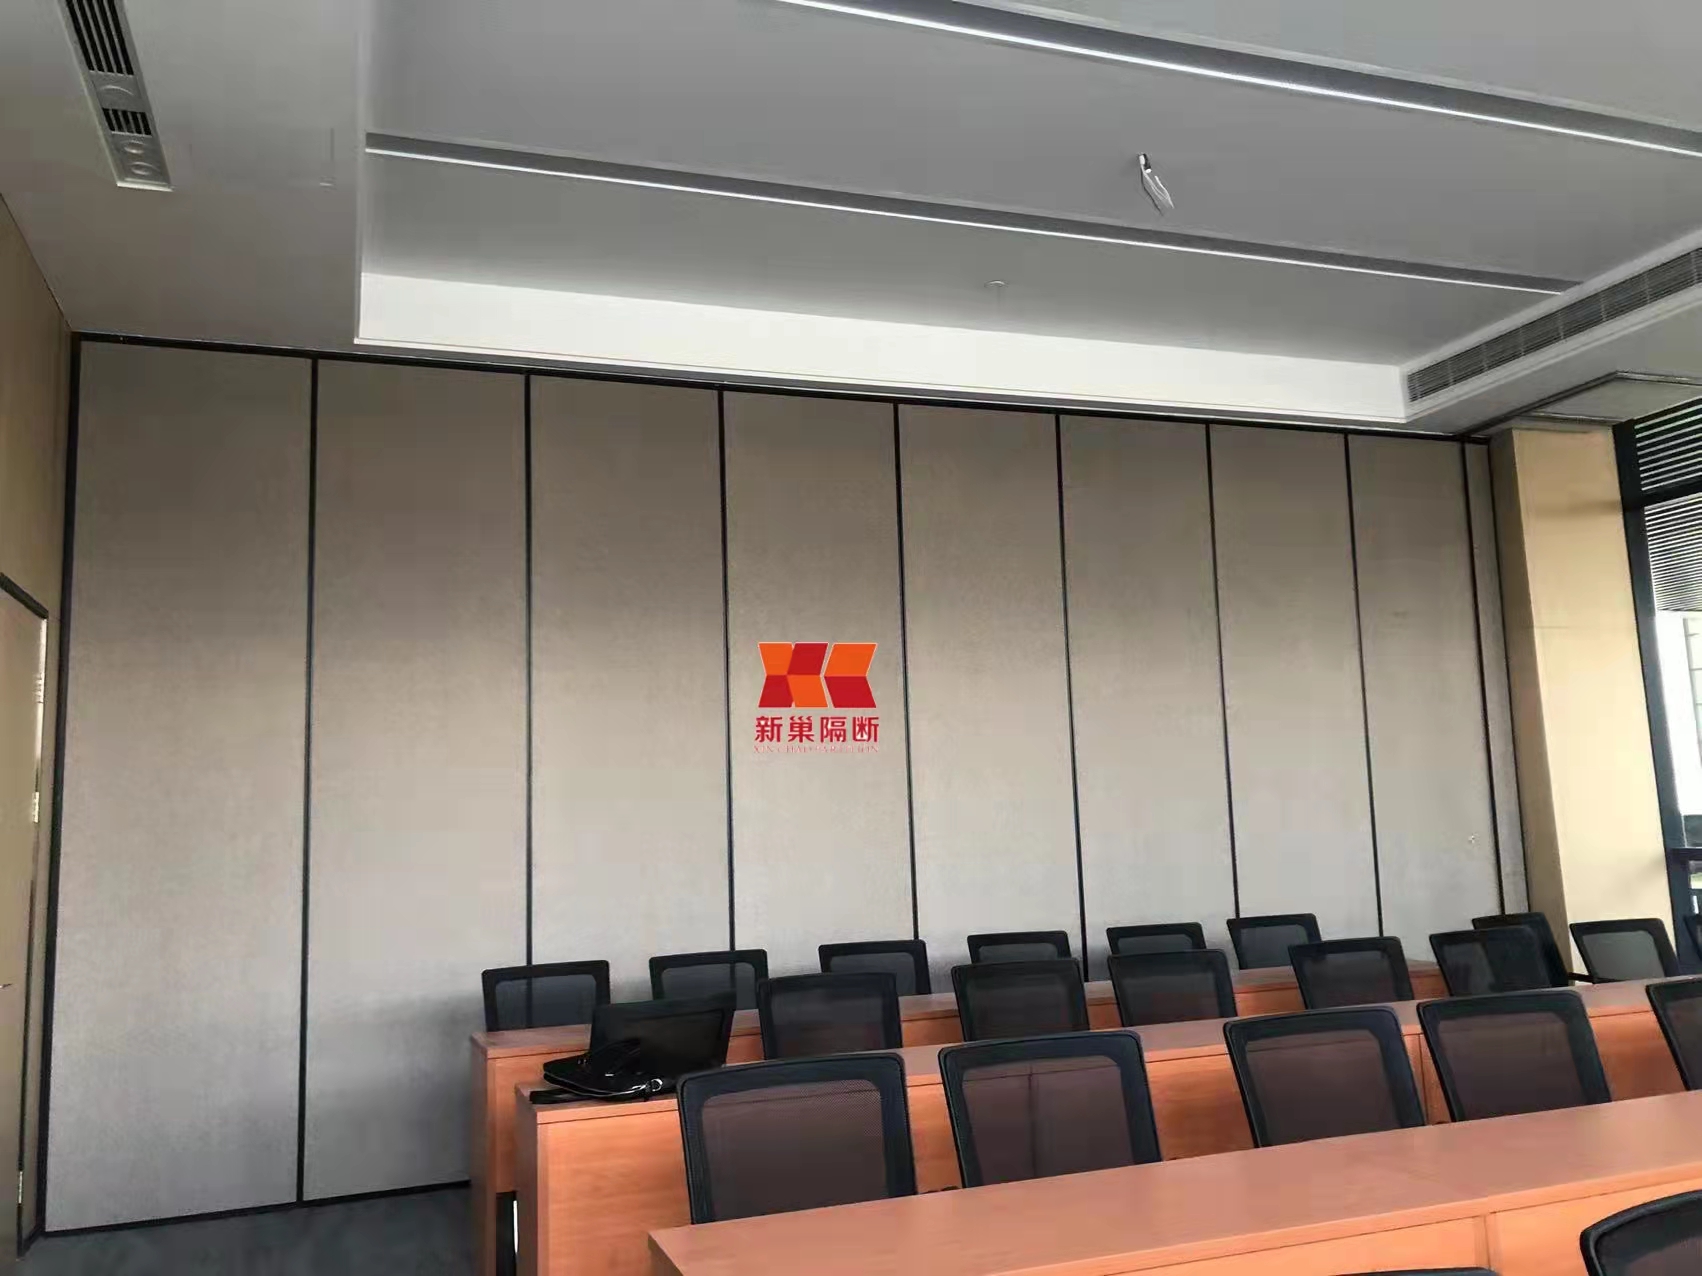 江苏厂家定制安装办公室移动隔断玻璃隔断高隔间 会议室硬包活动隔断 软包隔音墙